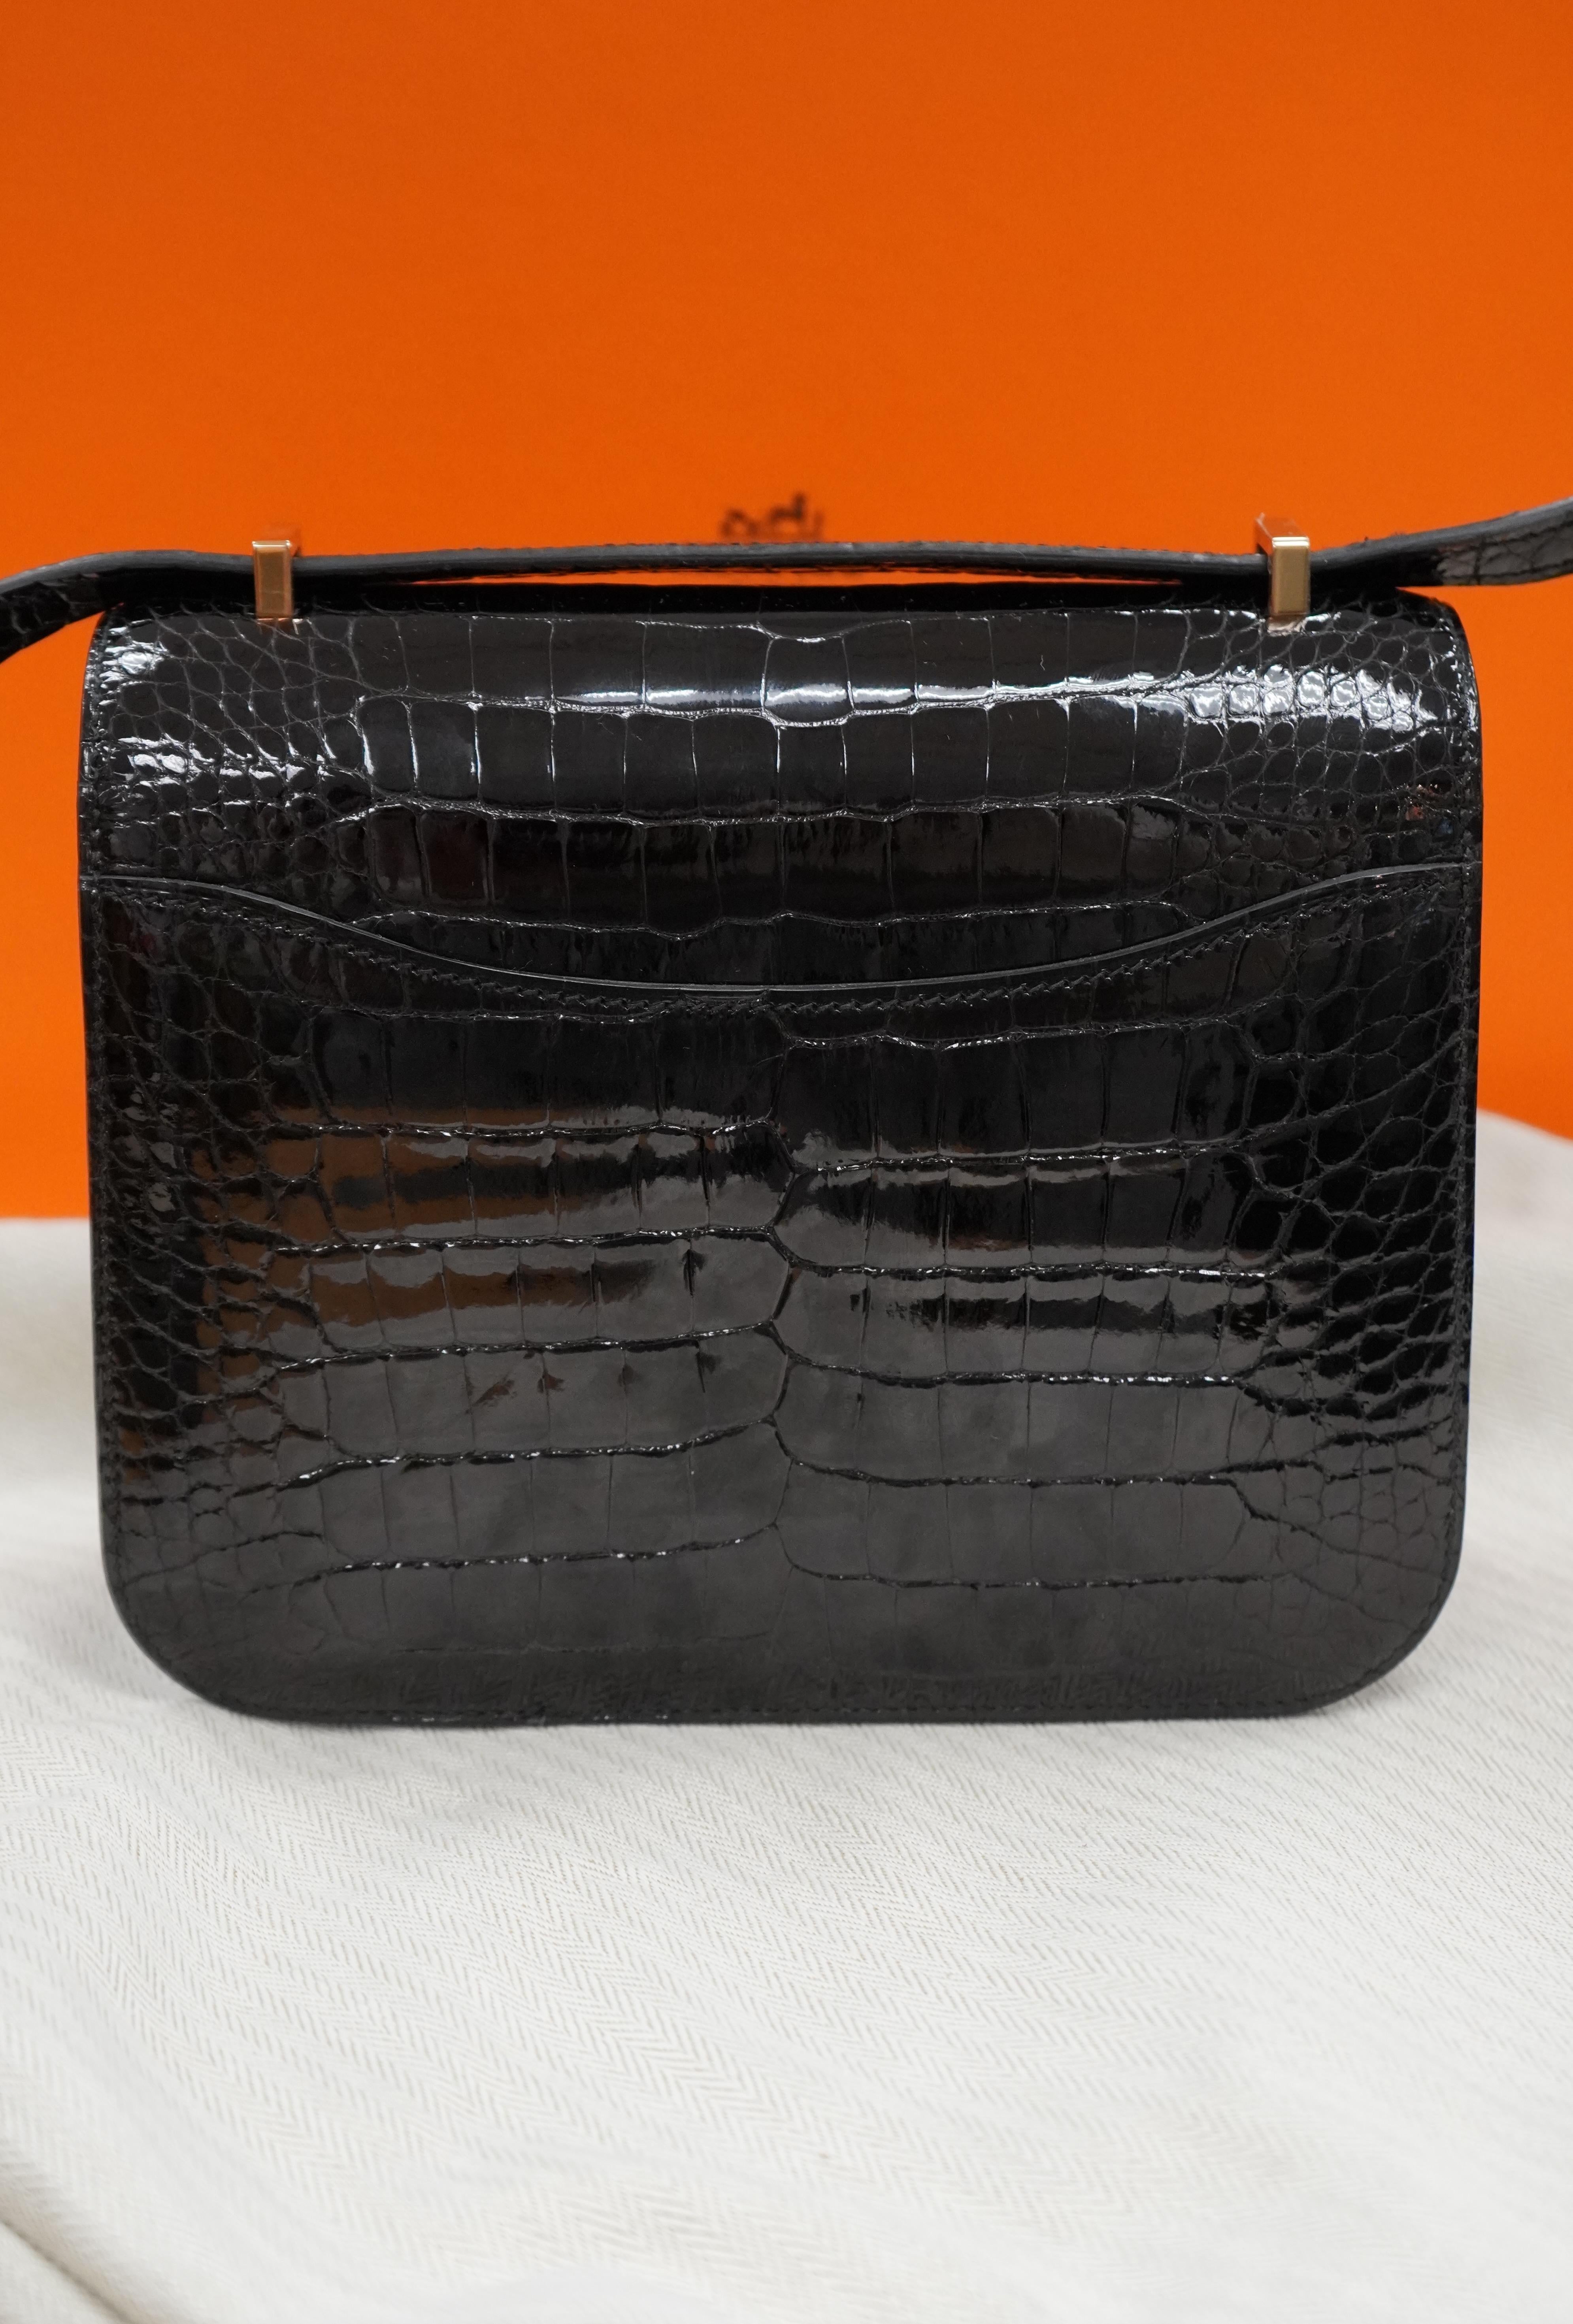 Hermes Black Crocodile Constance bag  For Sale 4